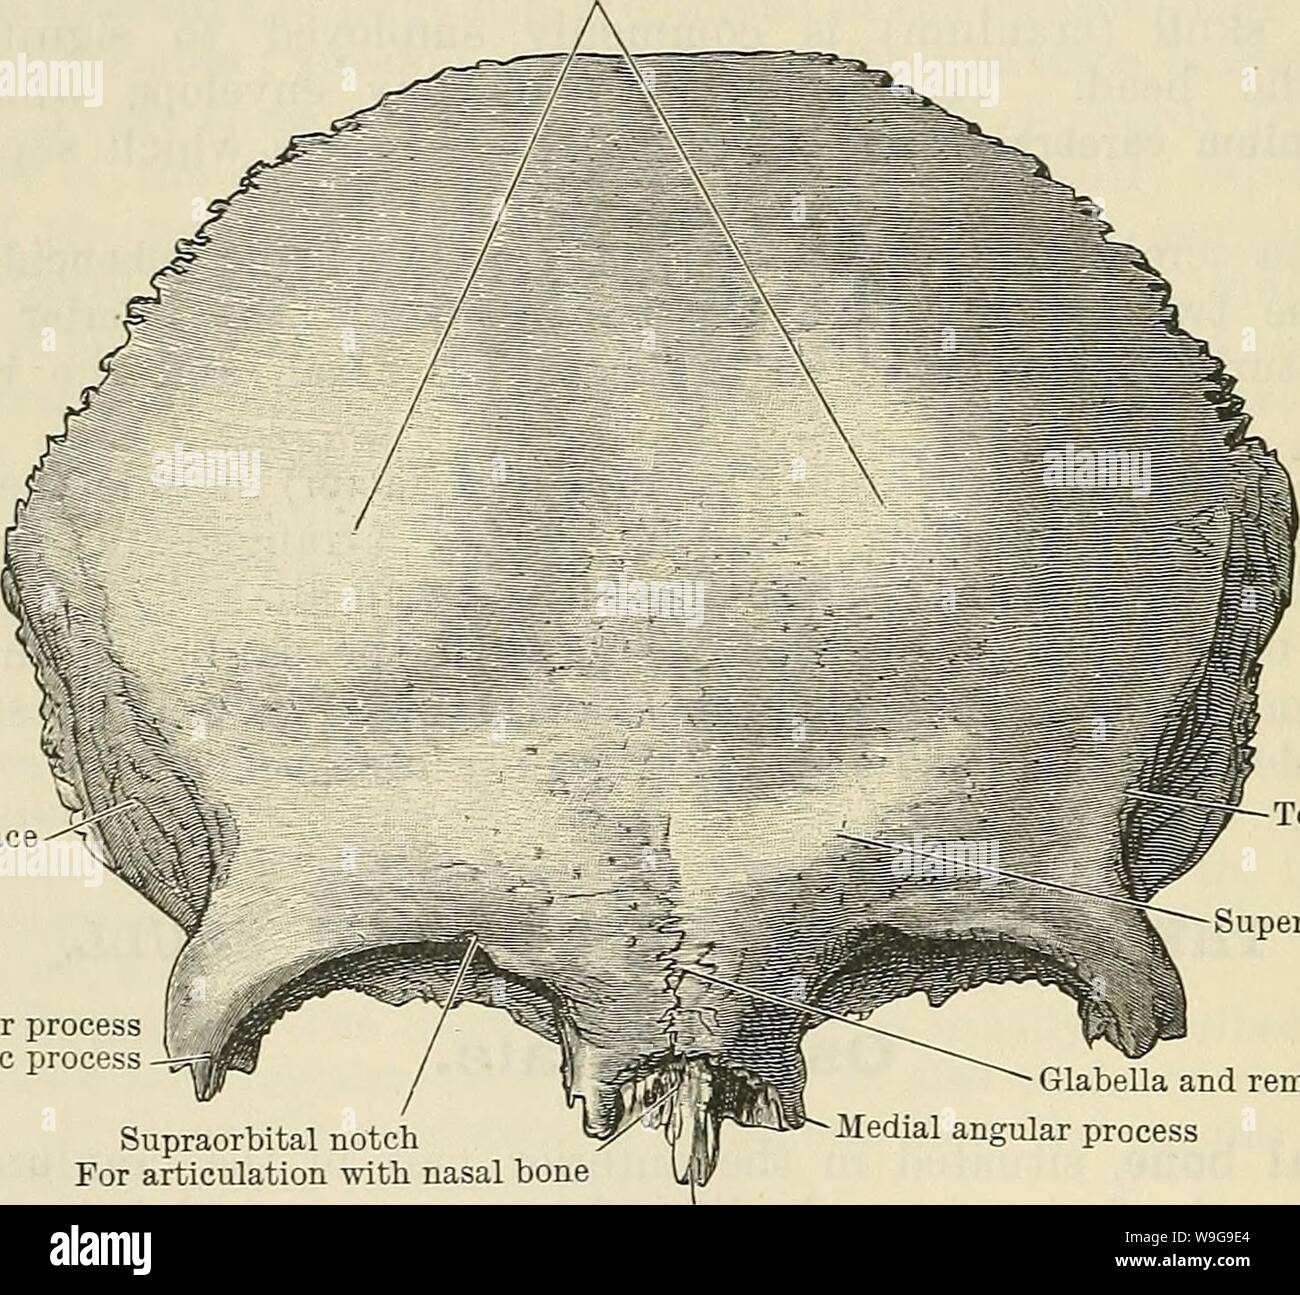 Archiv Bild ab Seite 149 von Cunningham's Lehrbuch der Anatomie (1914). Cunninghams Lehrbuch der Anatomie cunninghamstextb 00 cunn Jahr: 1914 (116 OSTEOLOGIE. Es wird durch eine Nut gekreuzt, oft (25 Prozent, Krause) umgewandelt in eine foramen - Die supraorbital notchor Foramen. Durch diese es passieren die supraorbital Nerv und die Arterie. Manchmal (16 Prozent, Loja) eine Reihe von Grooves, strahlt nach oben und seitlich, zeigen den Verlauf der Nerven (Dixon). Über dem supraorbital Marge der Charakter der Knochen zeigt deutliche Unterschiede in der zwei Geschlechter: in der männlichen, über dem Intervall zwischen Stockfoto